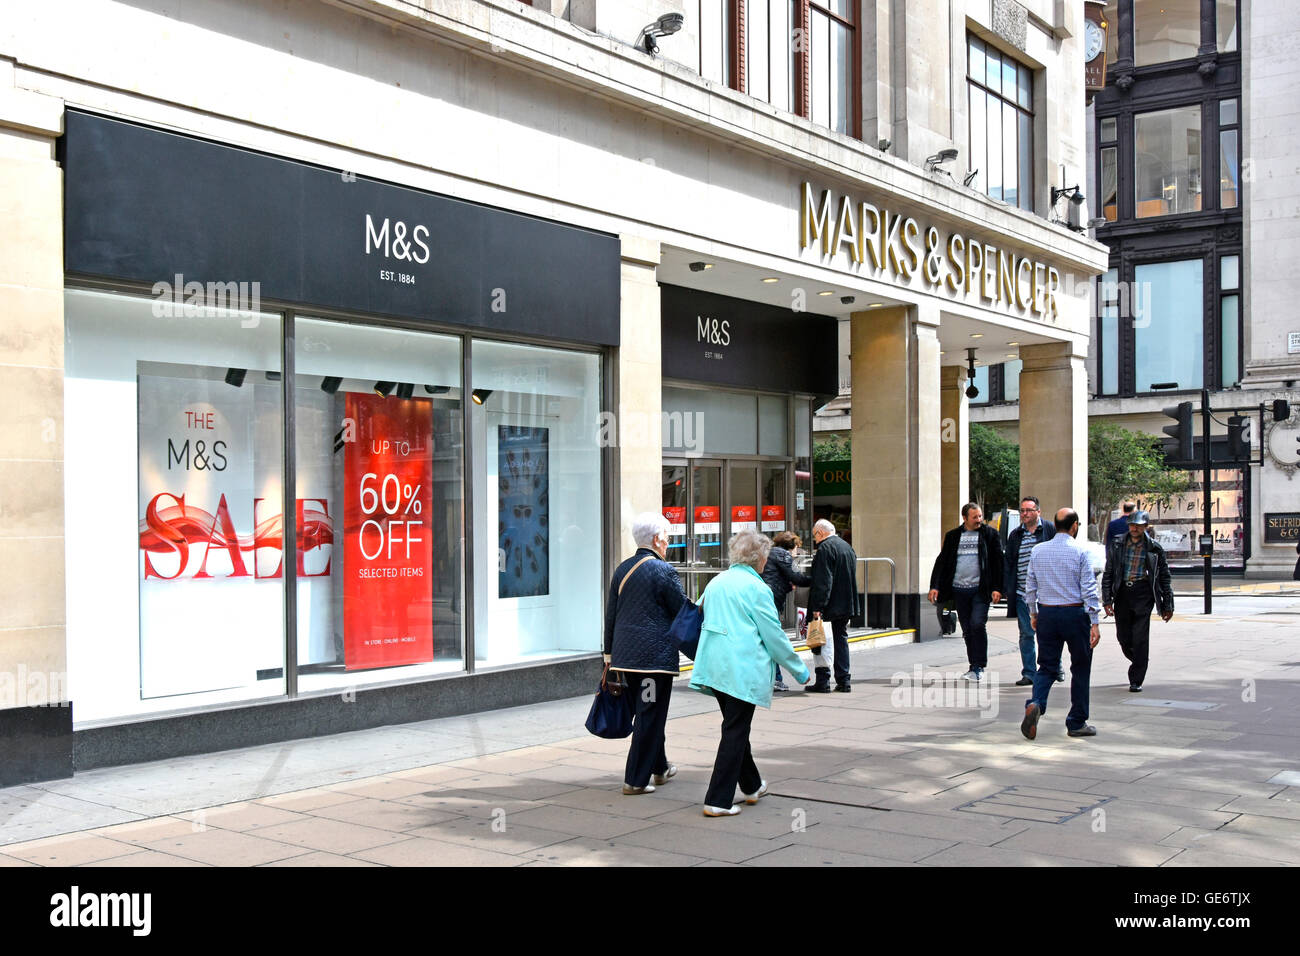 La Mecque du shopping d'Oxford Street avec vitrines et large trottoir du magasin M&S phare Marks and Spencer London West End à Londres, Angleterre, Royaume-Uni Banque D'Images